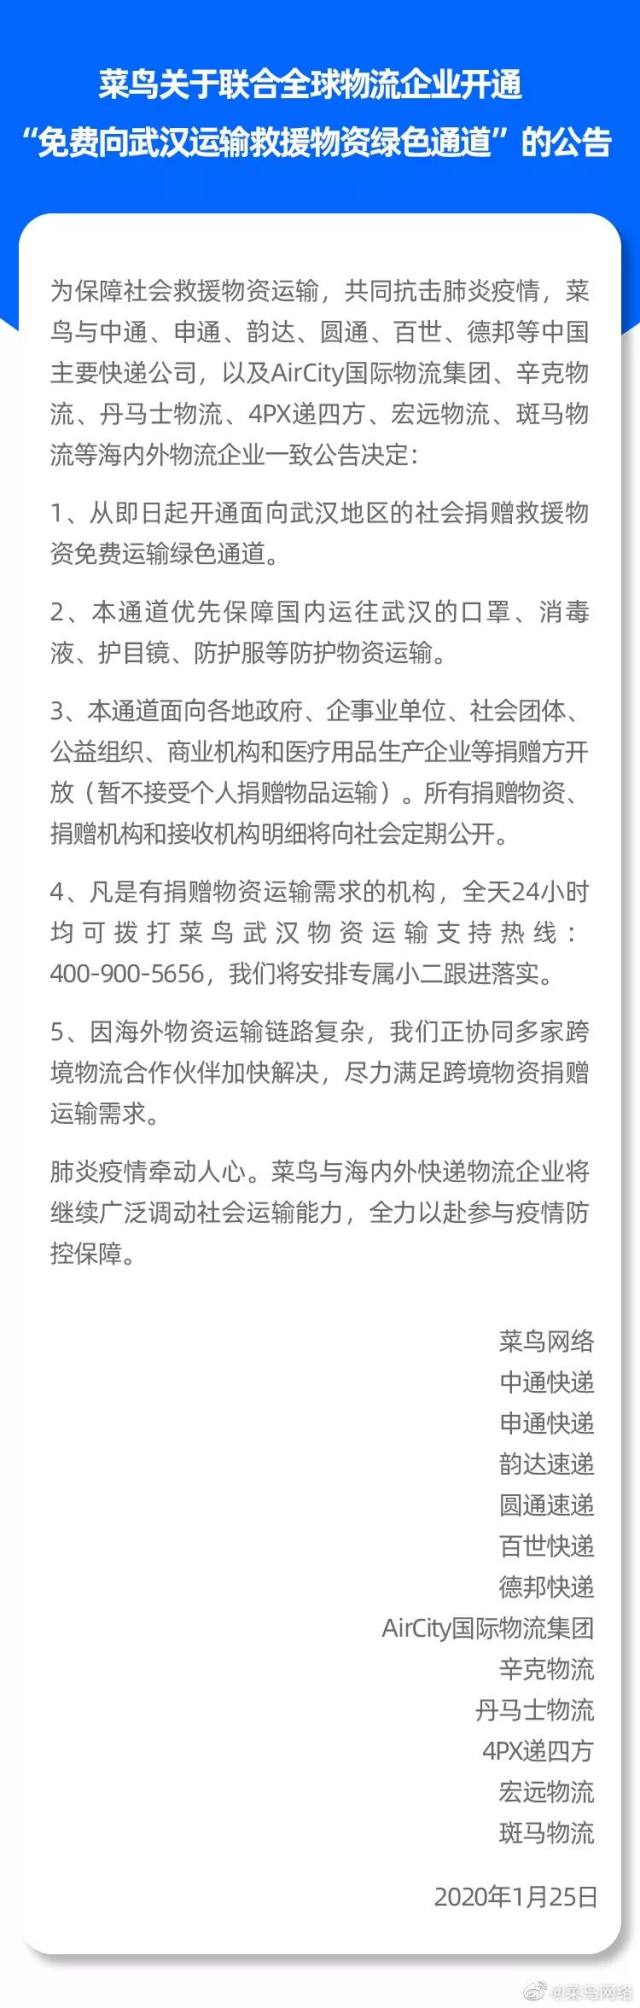 湖北省 99 家医院防护物资求助信息汇总（持续更新）